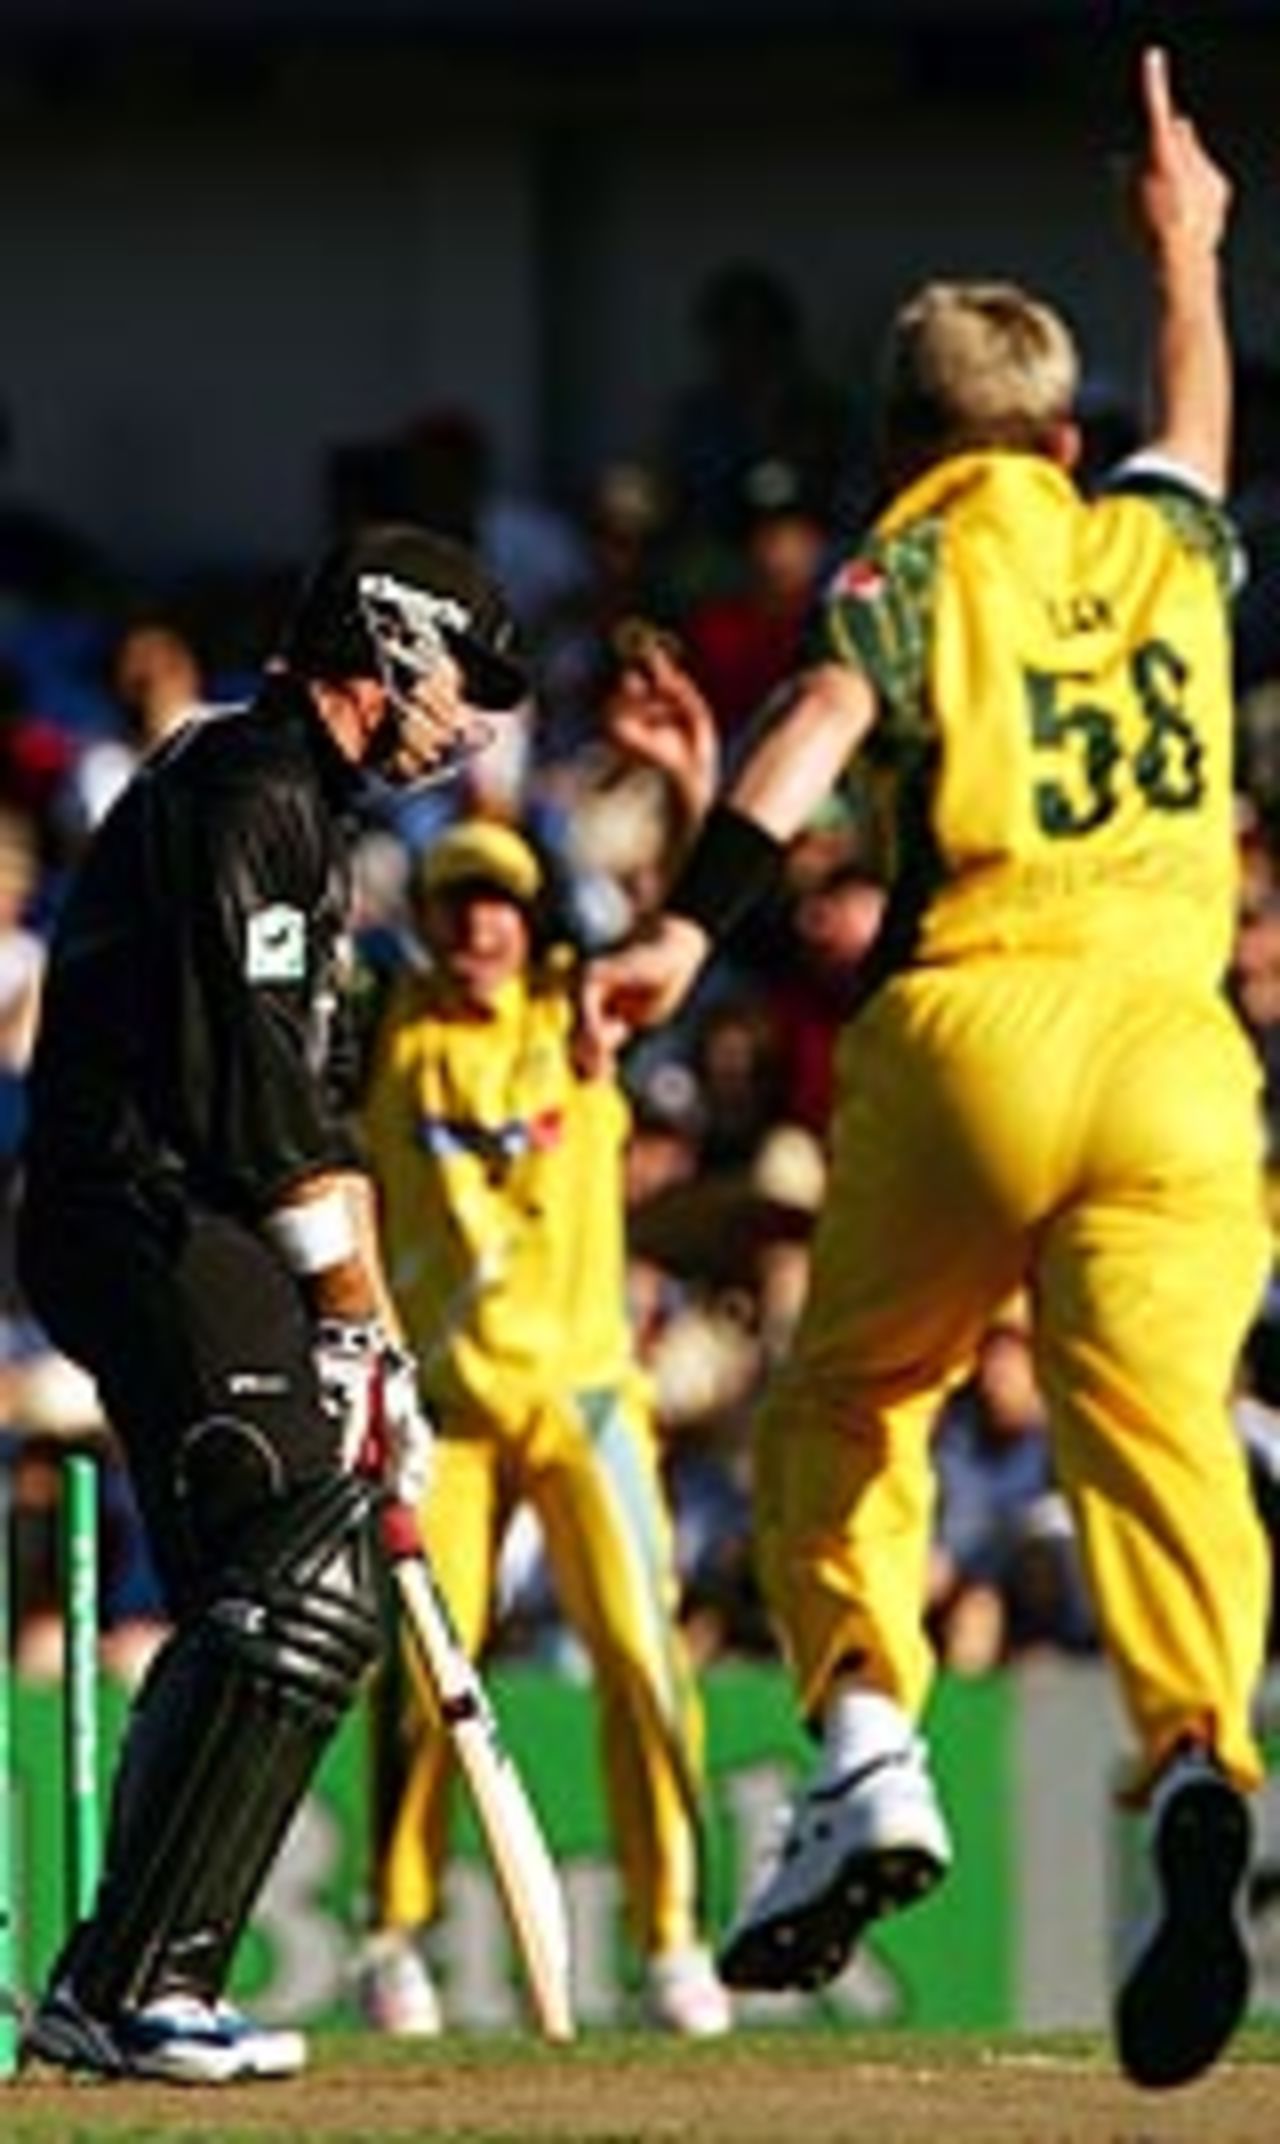 Brett Lee castles Stephen Fleming, New Zealand v Australia, 3rd ODI, Auckland, February 26, 2005